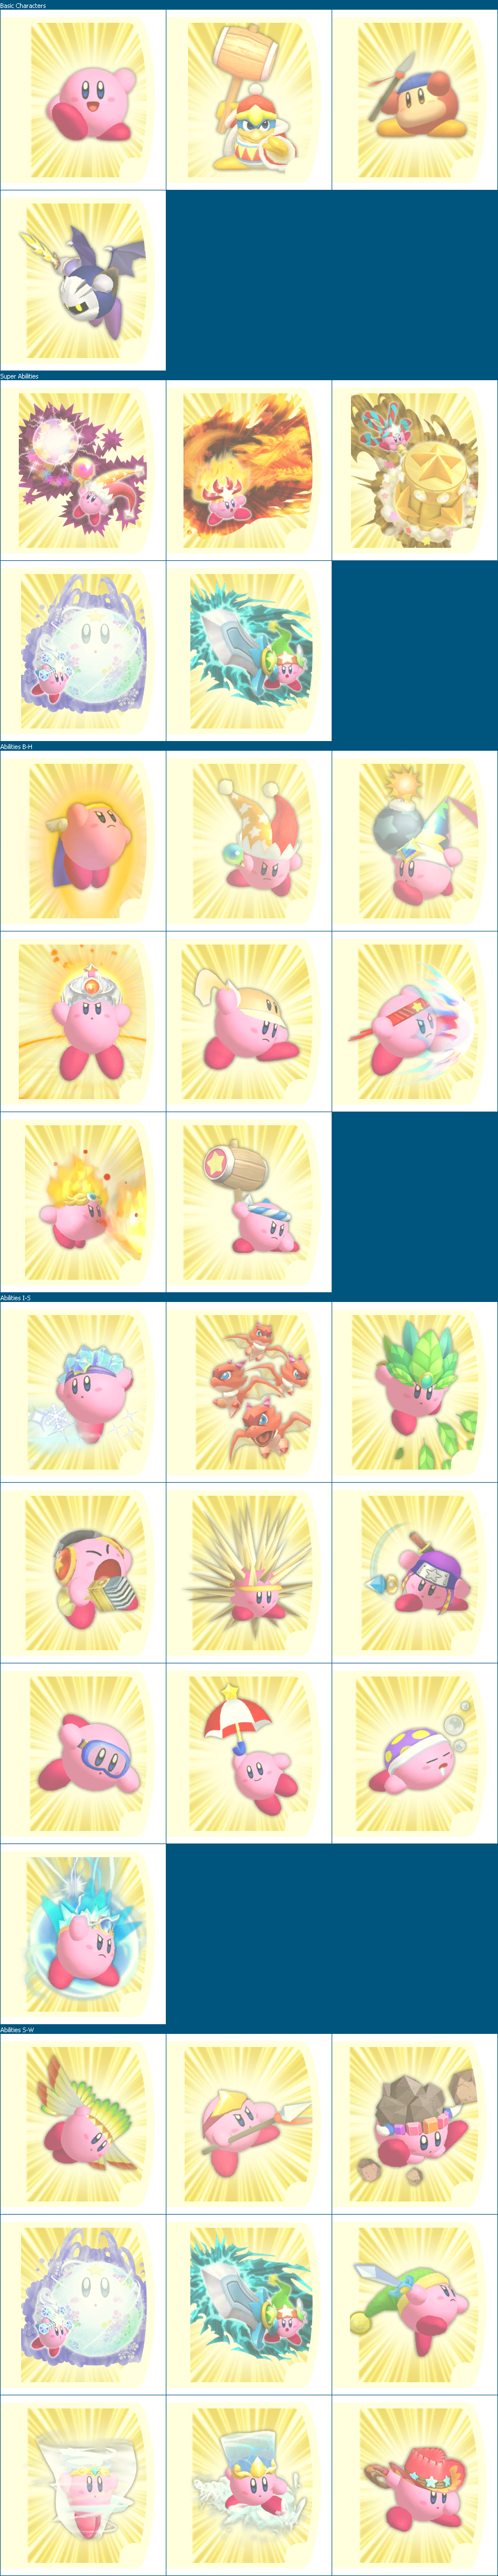 Kirby's Return to Dreamland / Kirby's Adventure Wii - Ability Art